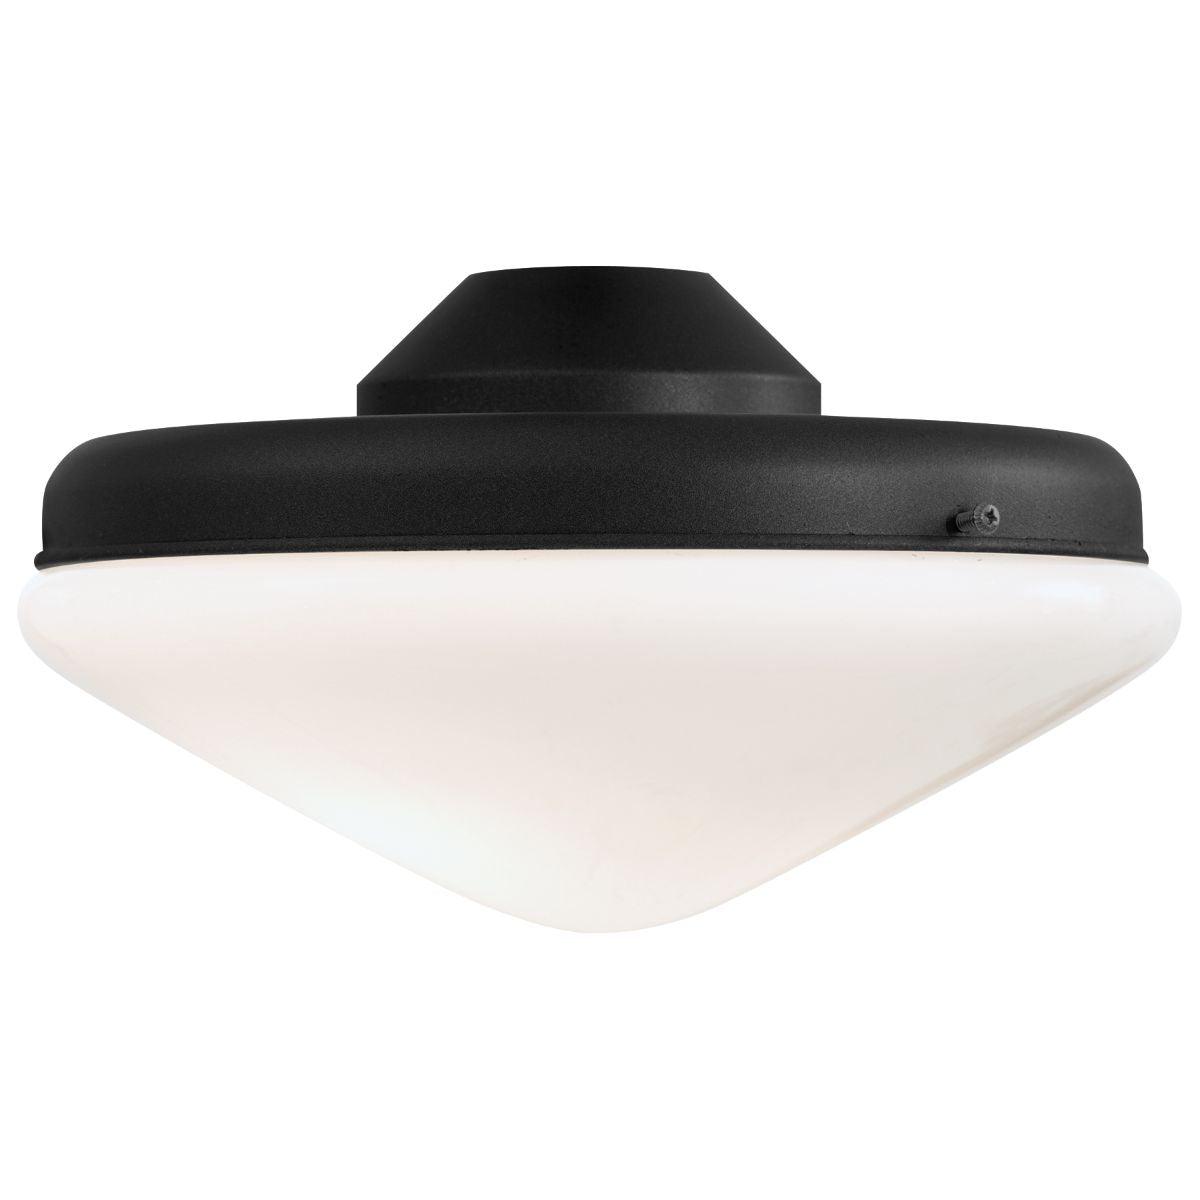 Universal 10.5 Inch 2 Light LED Ceiling Fan Ligh Kit